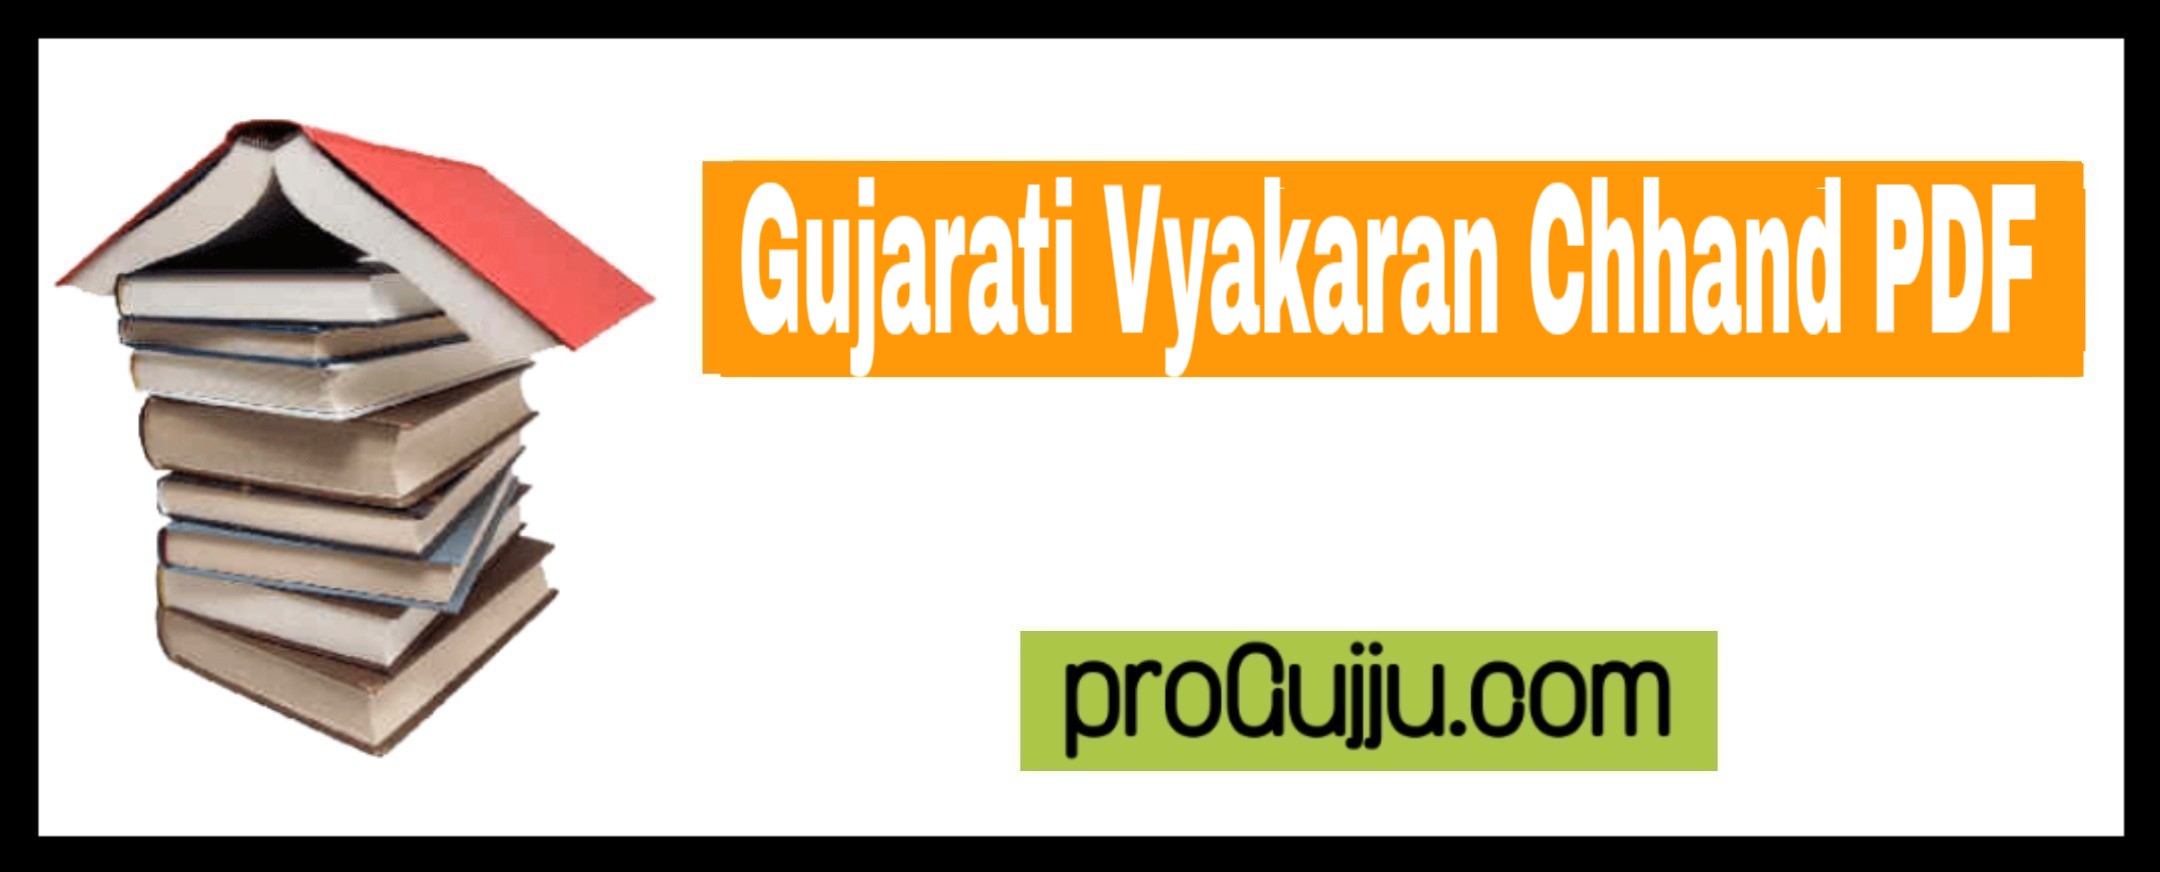 Gujarati Vyakaran Chhand PDF